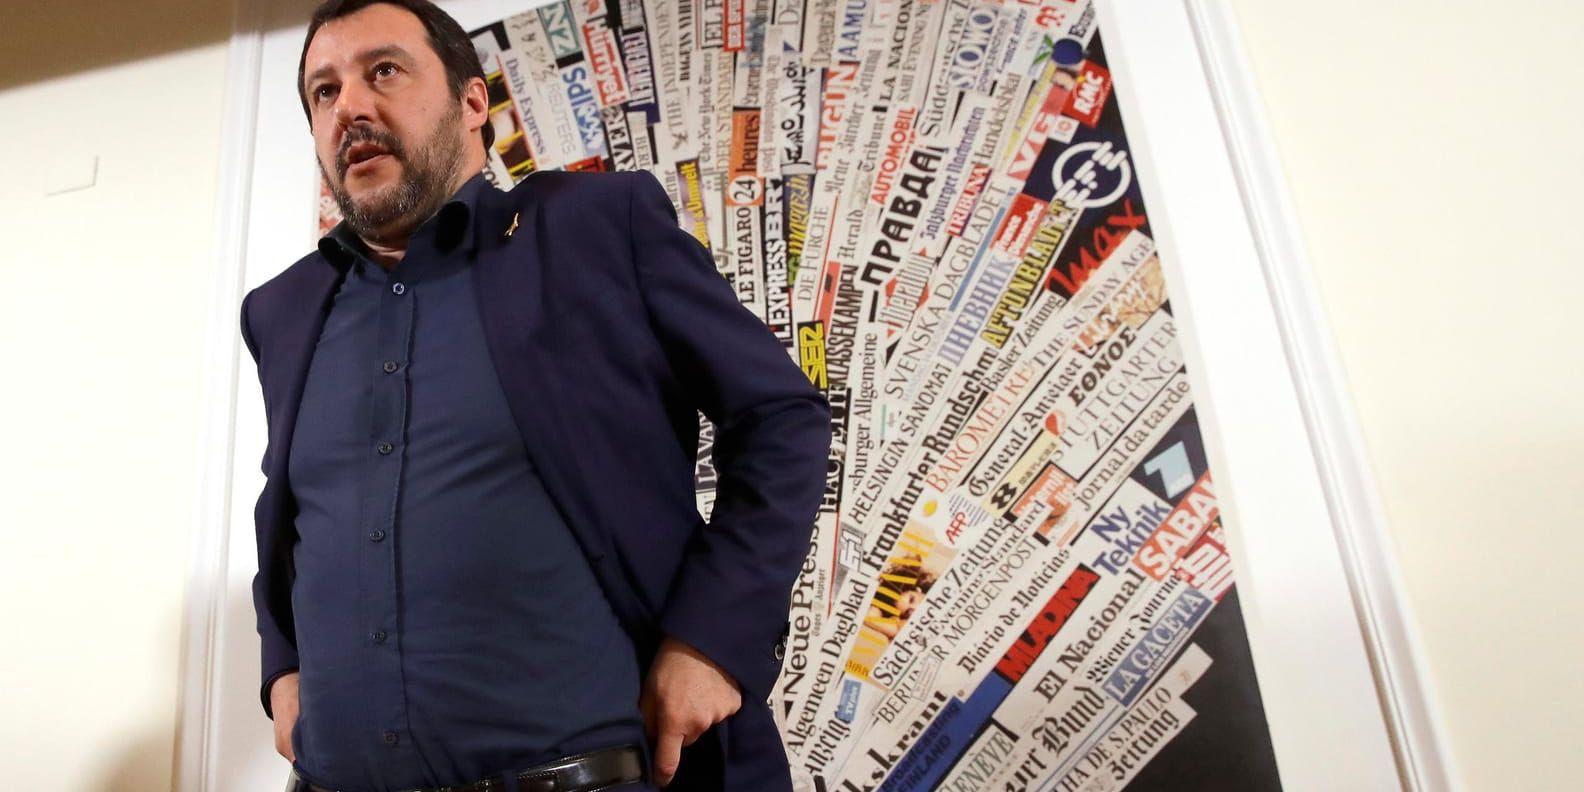 Legas partiledare Matteo Salvini öppnar för olika regeringskonstellationer.